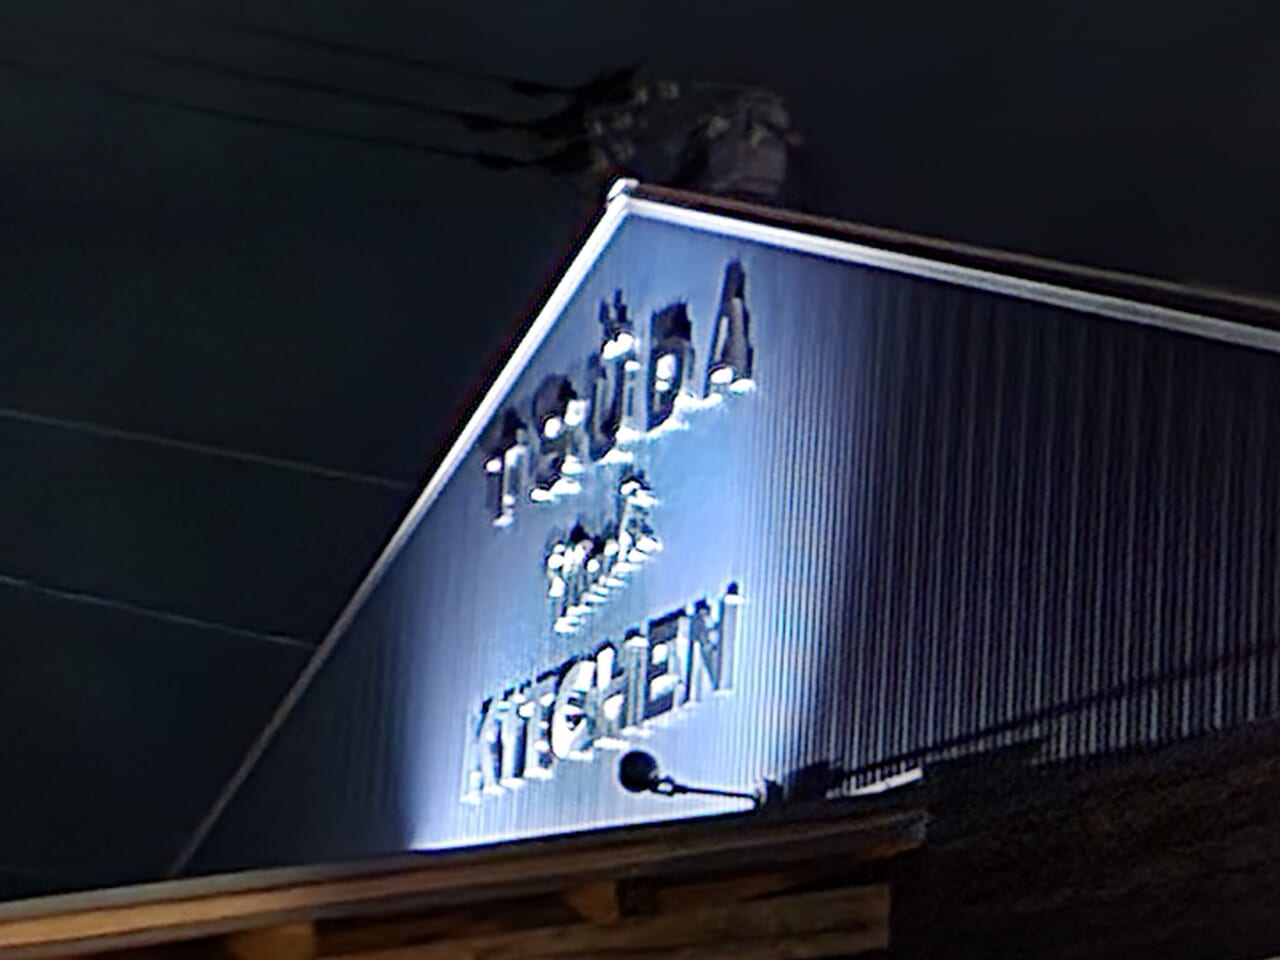 「焼き鳥とおばんざいの店 一平ちゃん」隣にある「TSUDA mach KITCIHN（つだまちキッチン）」